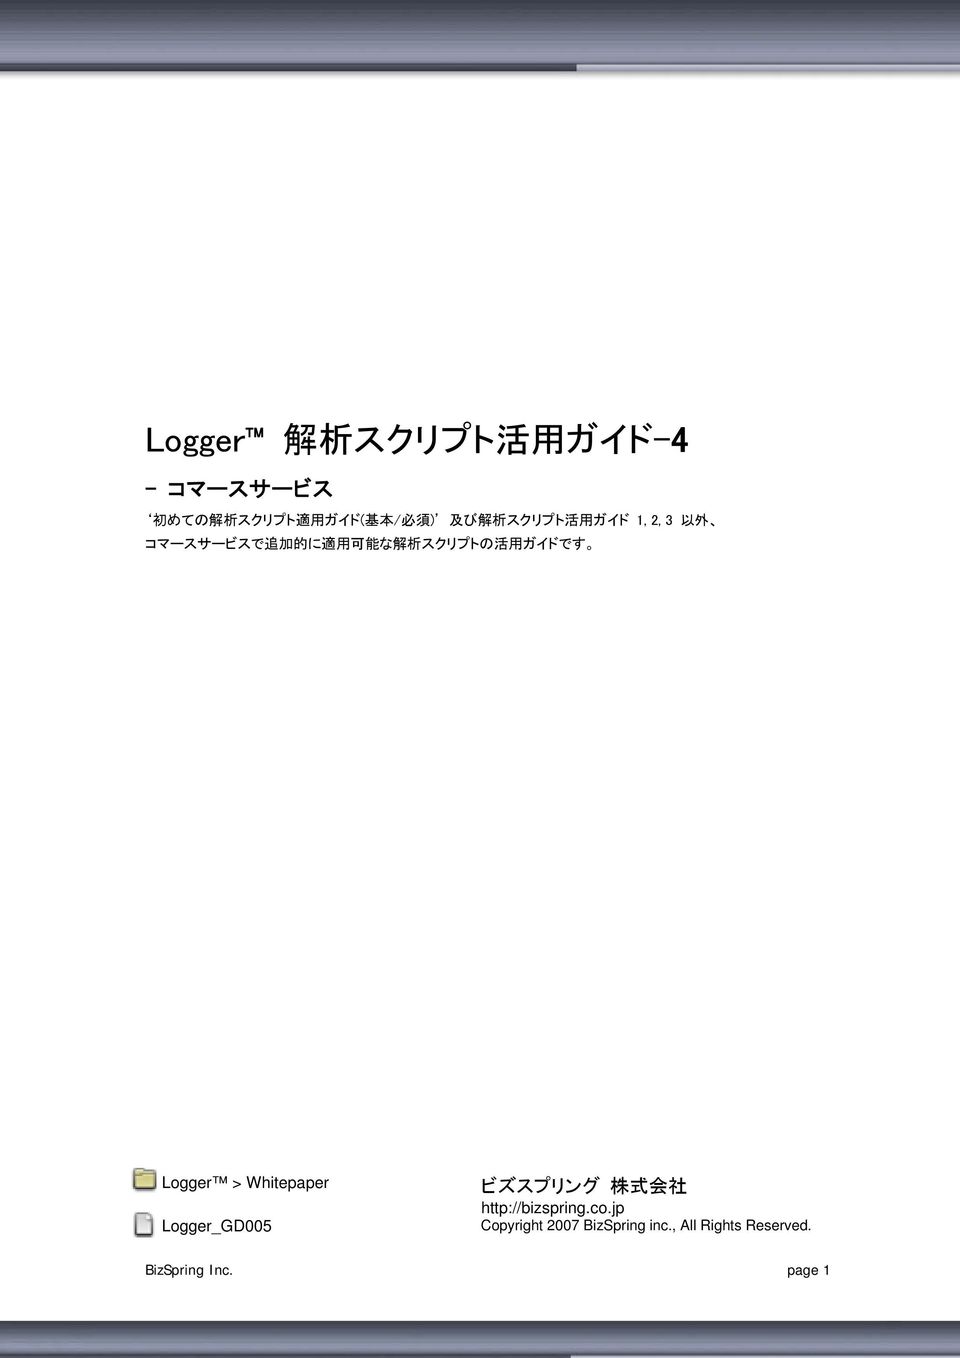 用 ガイドです Logger > Whitepaper Logger_GD005 ビズスプリング 株 式 会 社 http://bizspring.